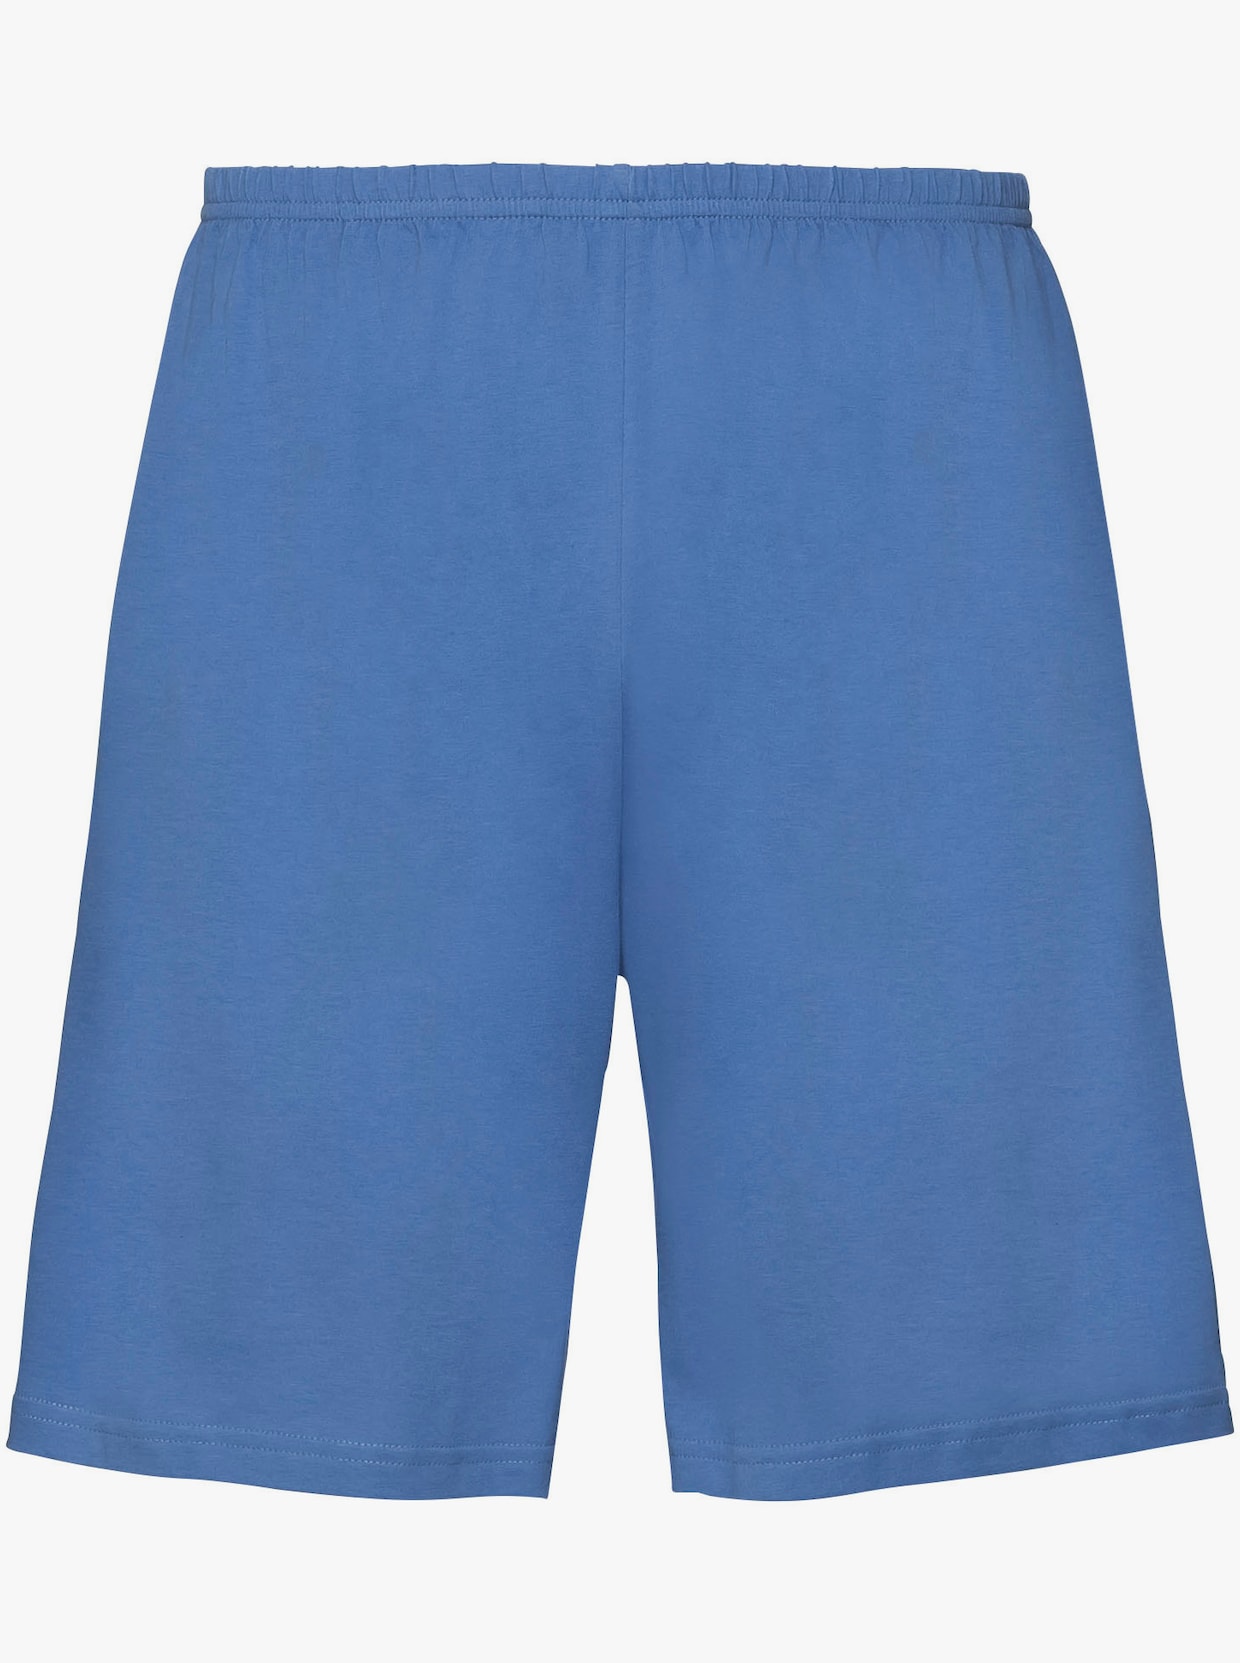 KINGsCLUB Pyjamas - blå + bordeaux